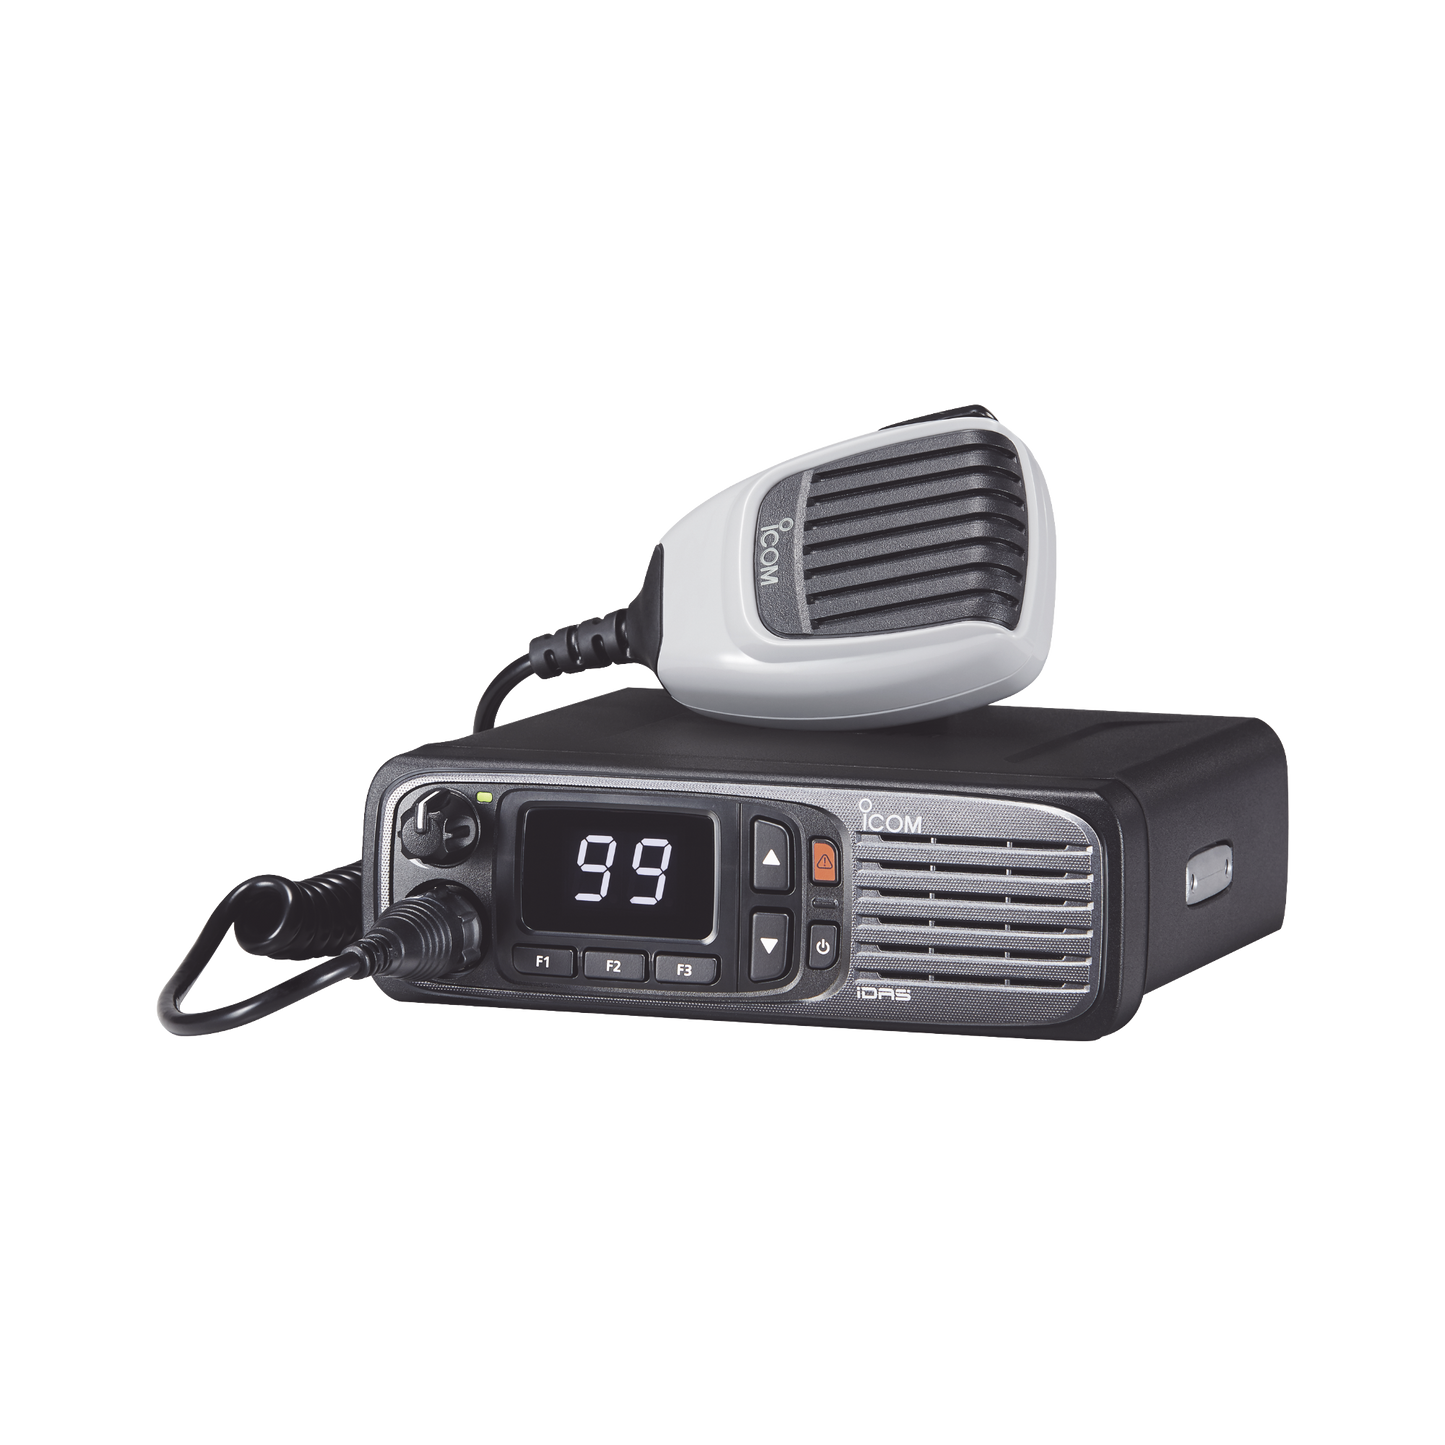 Radio móvil digital con pantalla numérica, en rango de 380-470MHz, de 99 canales seleccionables, GPS, y bluethooth. Incluye micrófono, cable de corriente y bracket.